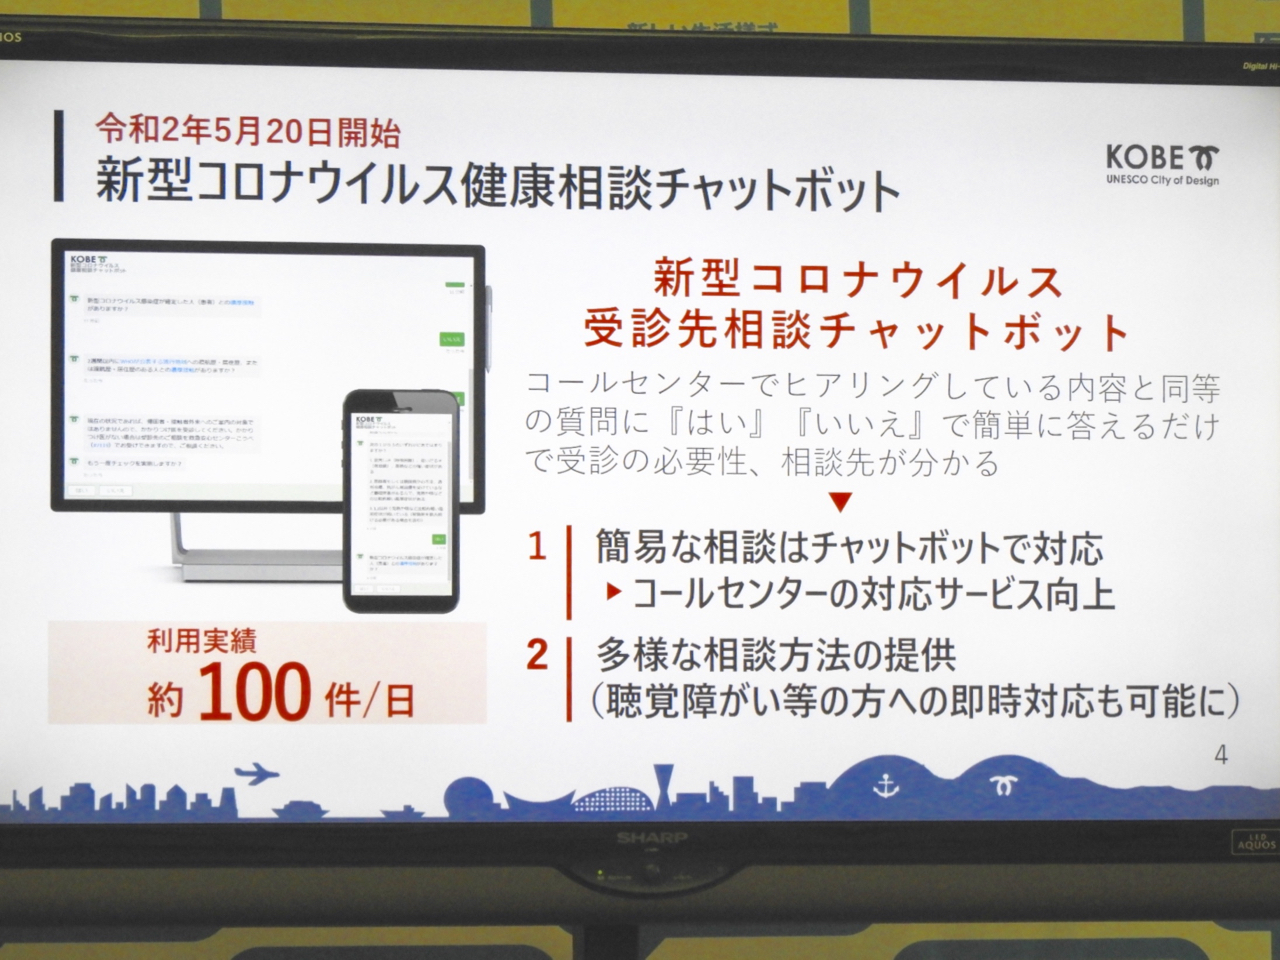 神戸市と日本ms 新型コロナ対策で連携 健康相談や給付金対応をデジタルで効率化 Cnet Japan